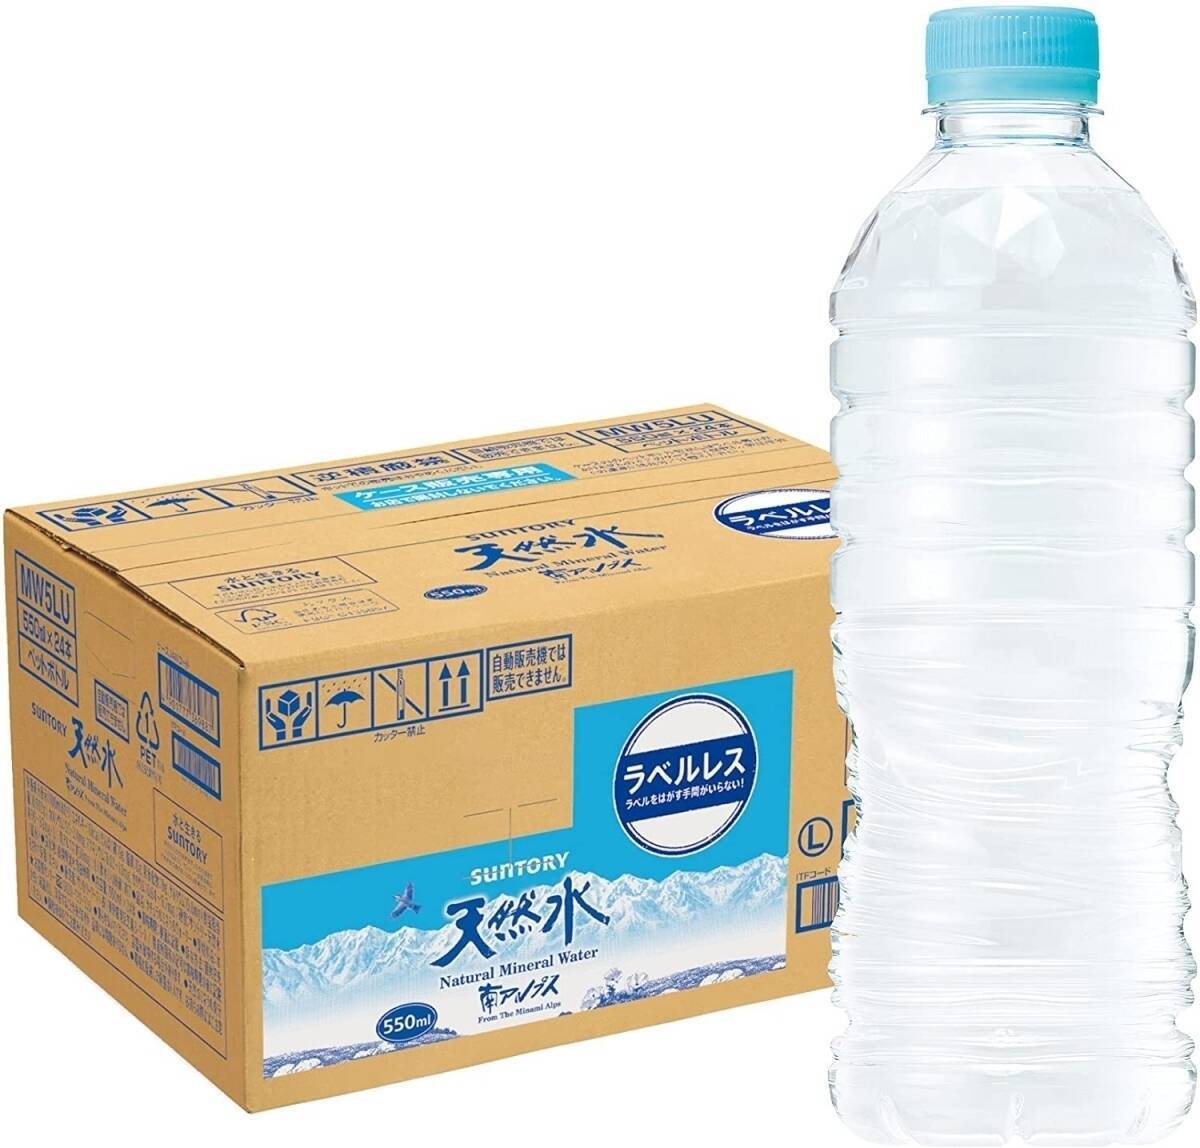 サントリー天然水PETが半額以下など、お水・お茶・炭酸水がAmazonで24時間限定セール価格